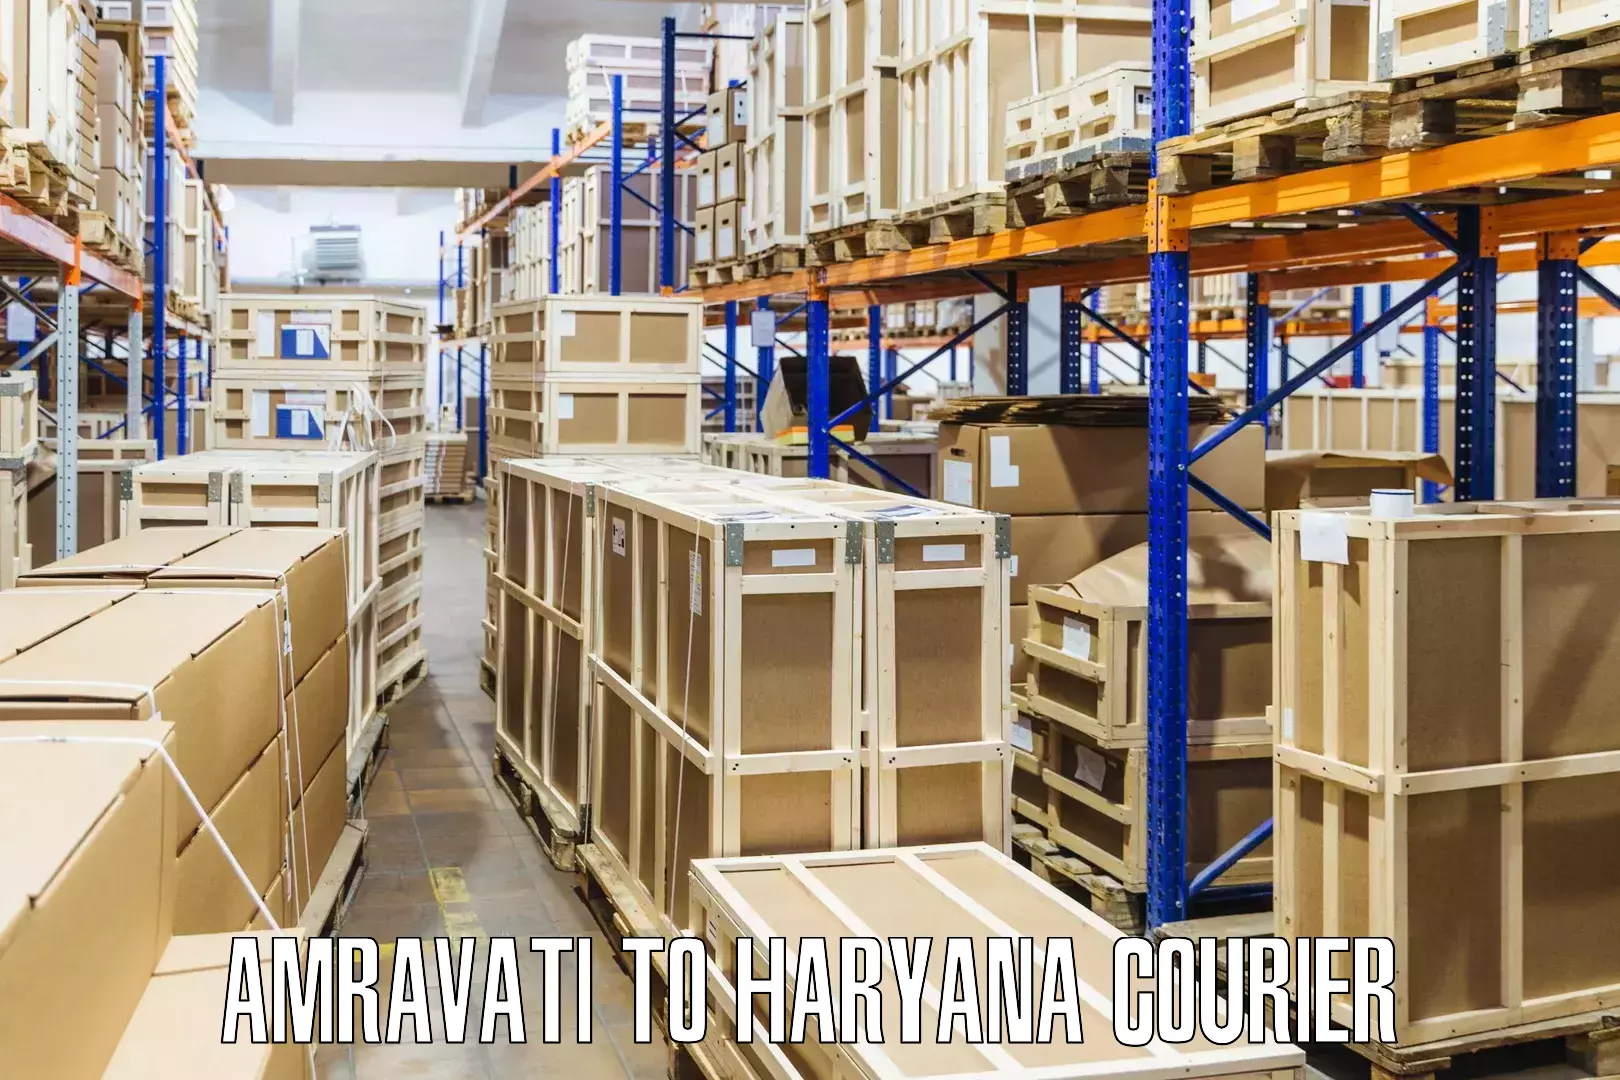 Advanced shipping technology Amravati to Agroha